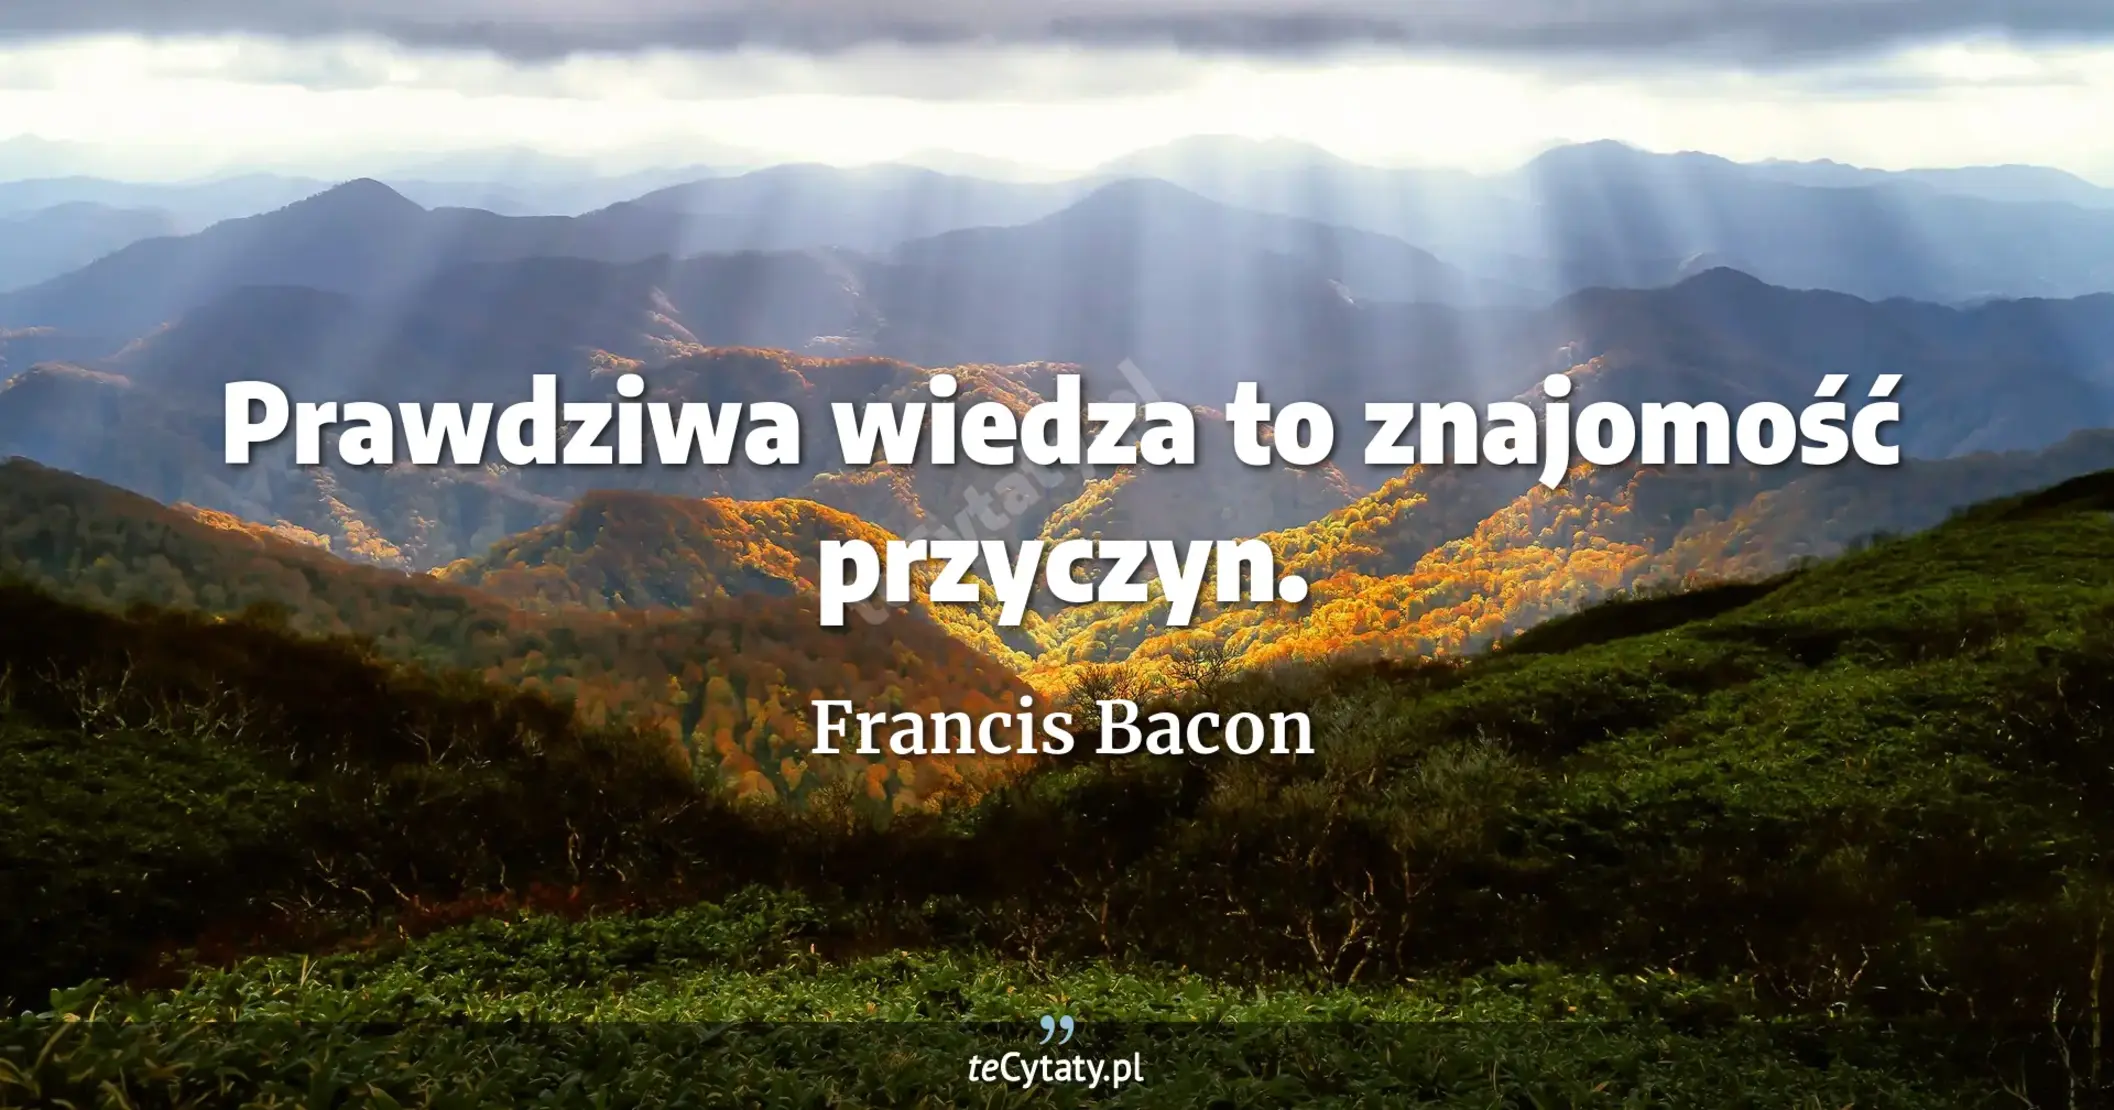 Prawdziwa wiedza to znajomość przyczyn. - Francis Bacon